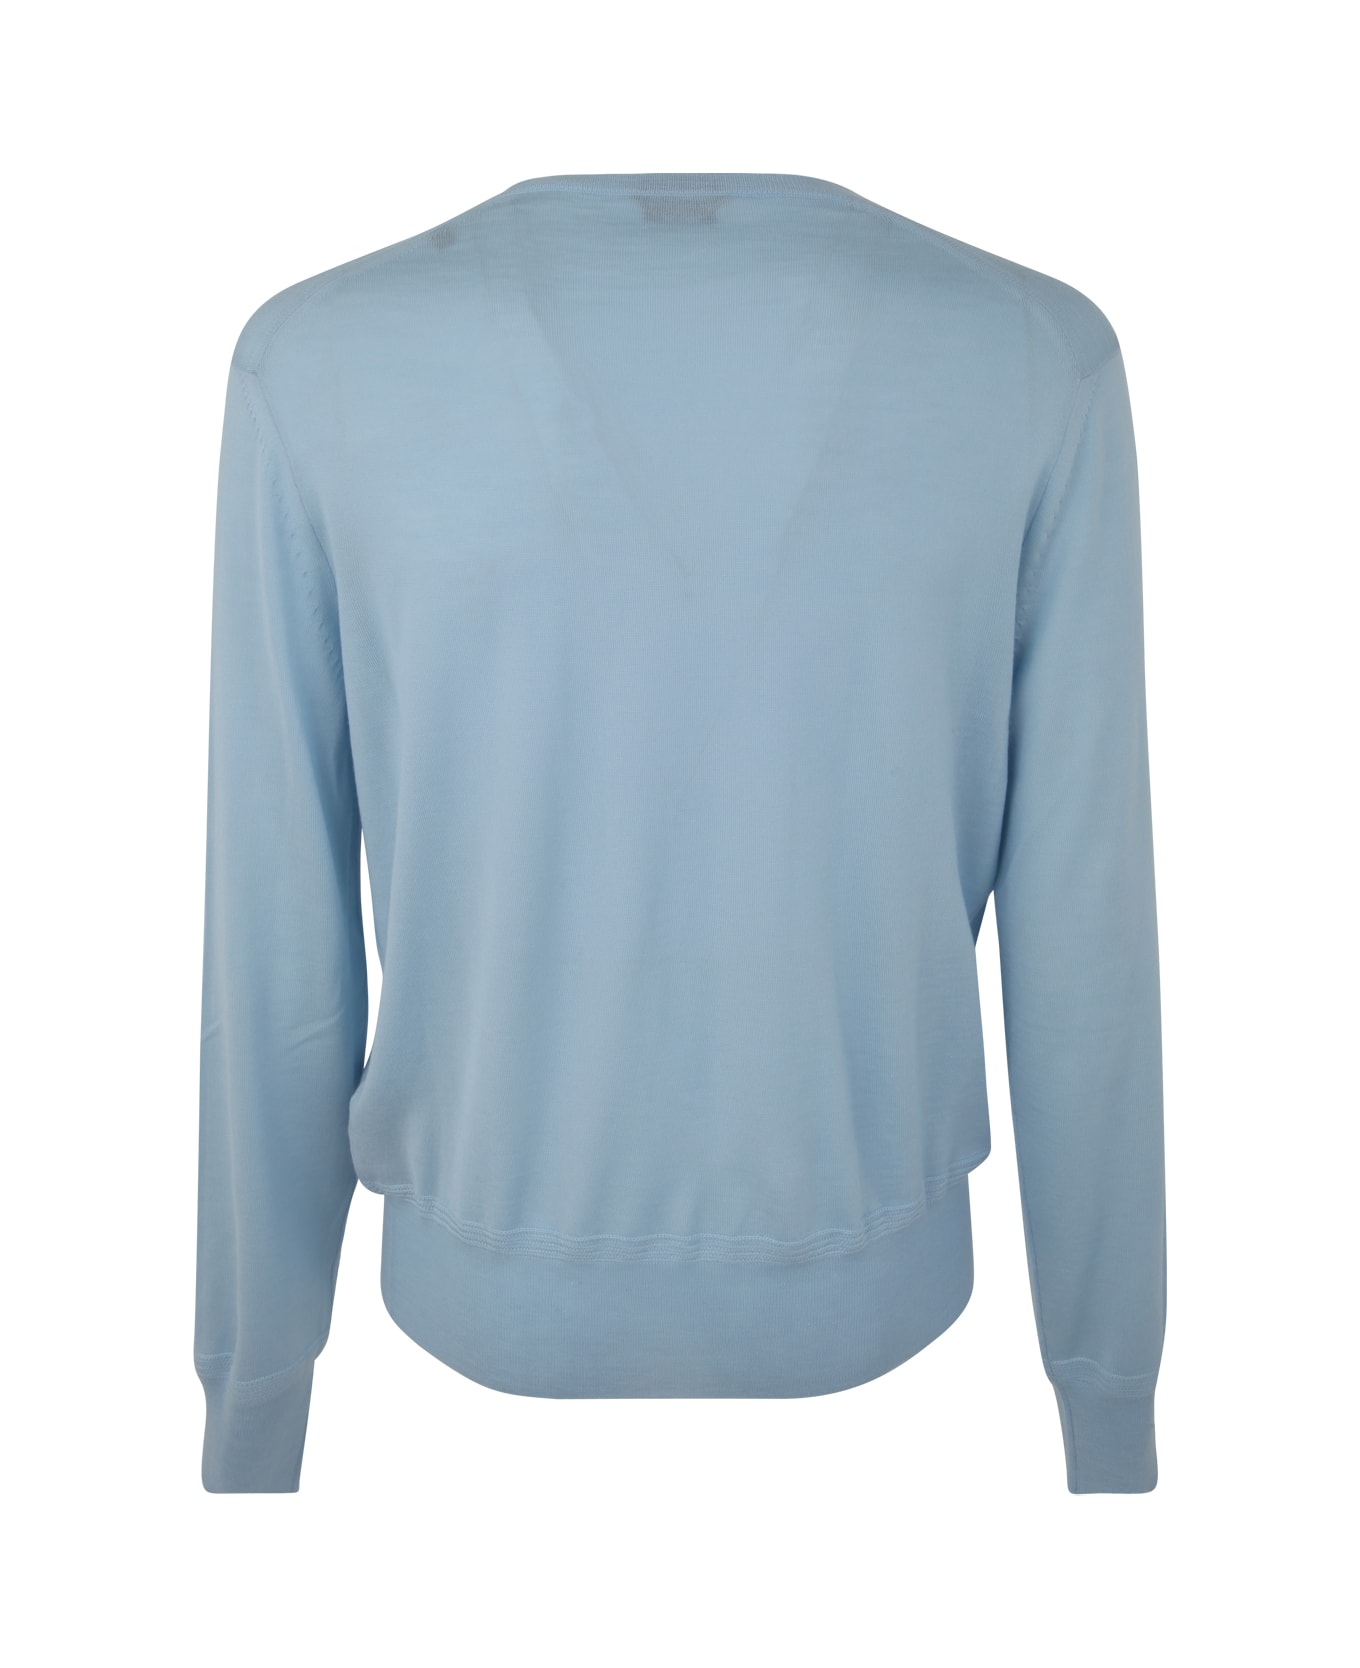 Tom Ford V Neck Sweater - Sky Blue ニットウェア